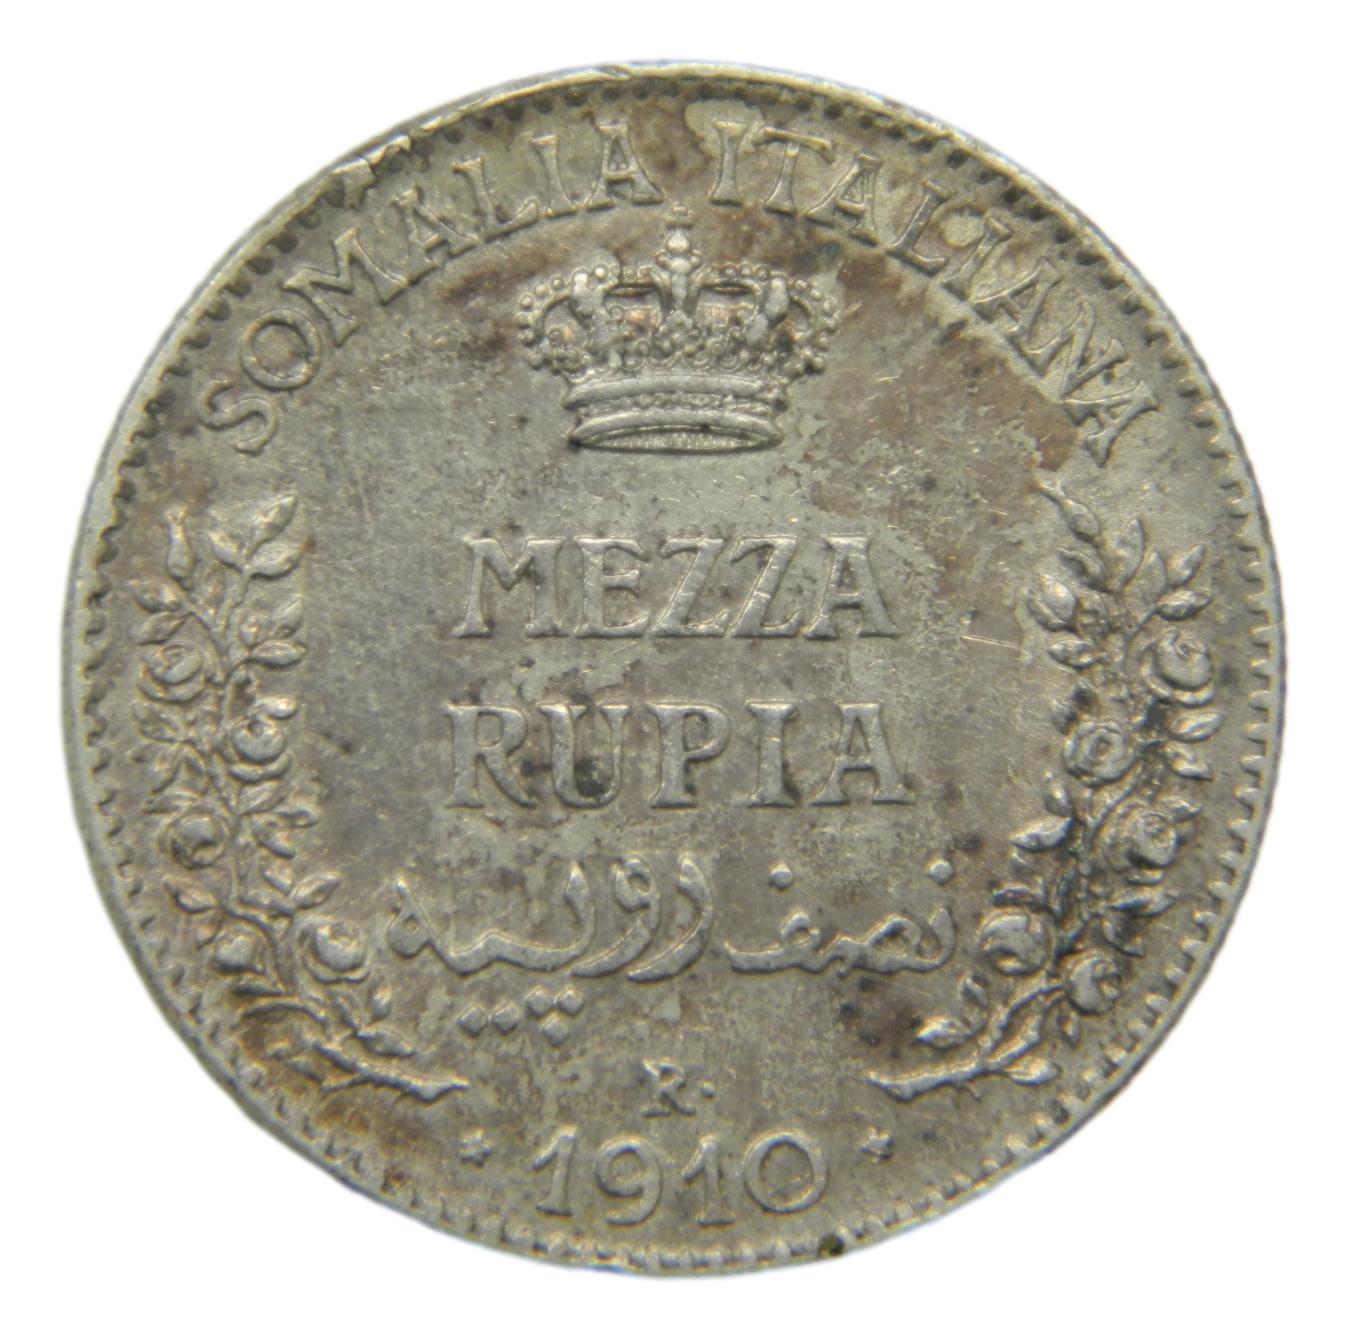 1910 - SOMALIA ITALIANA - 1/2 RUPIA - S6